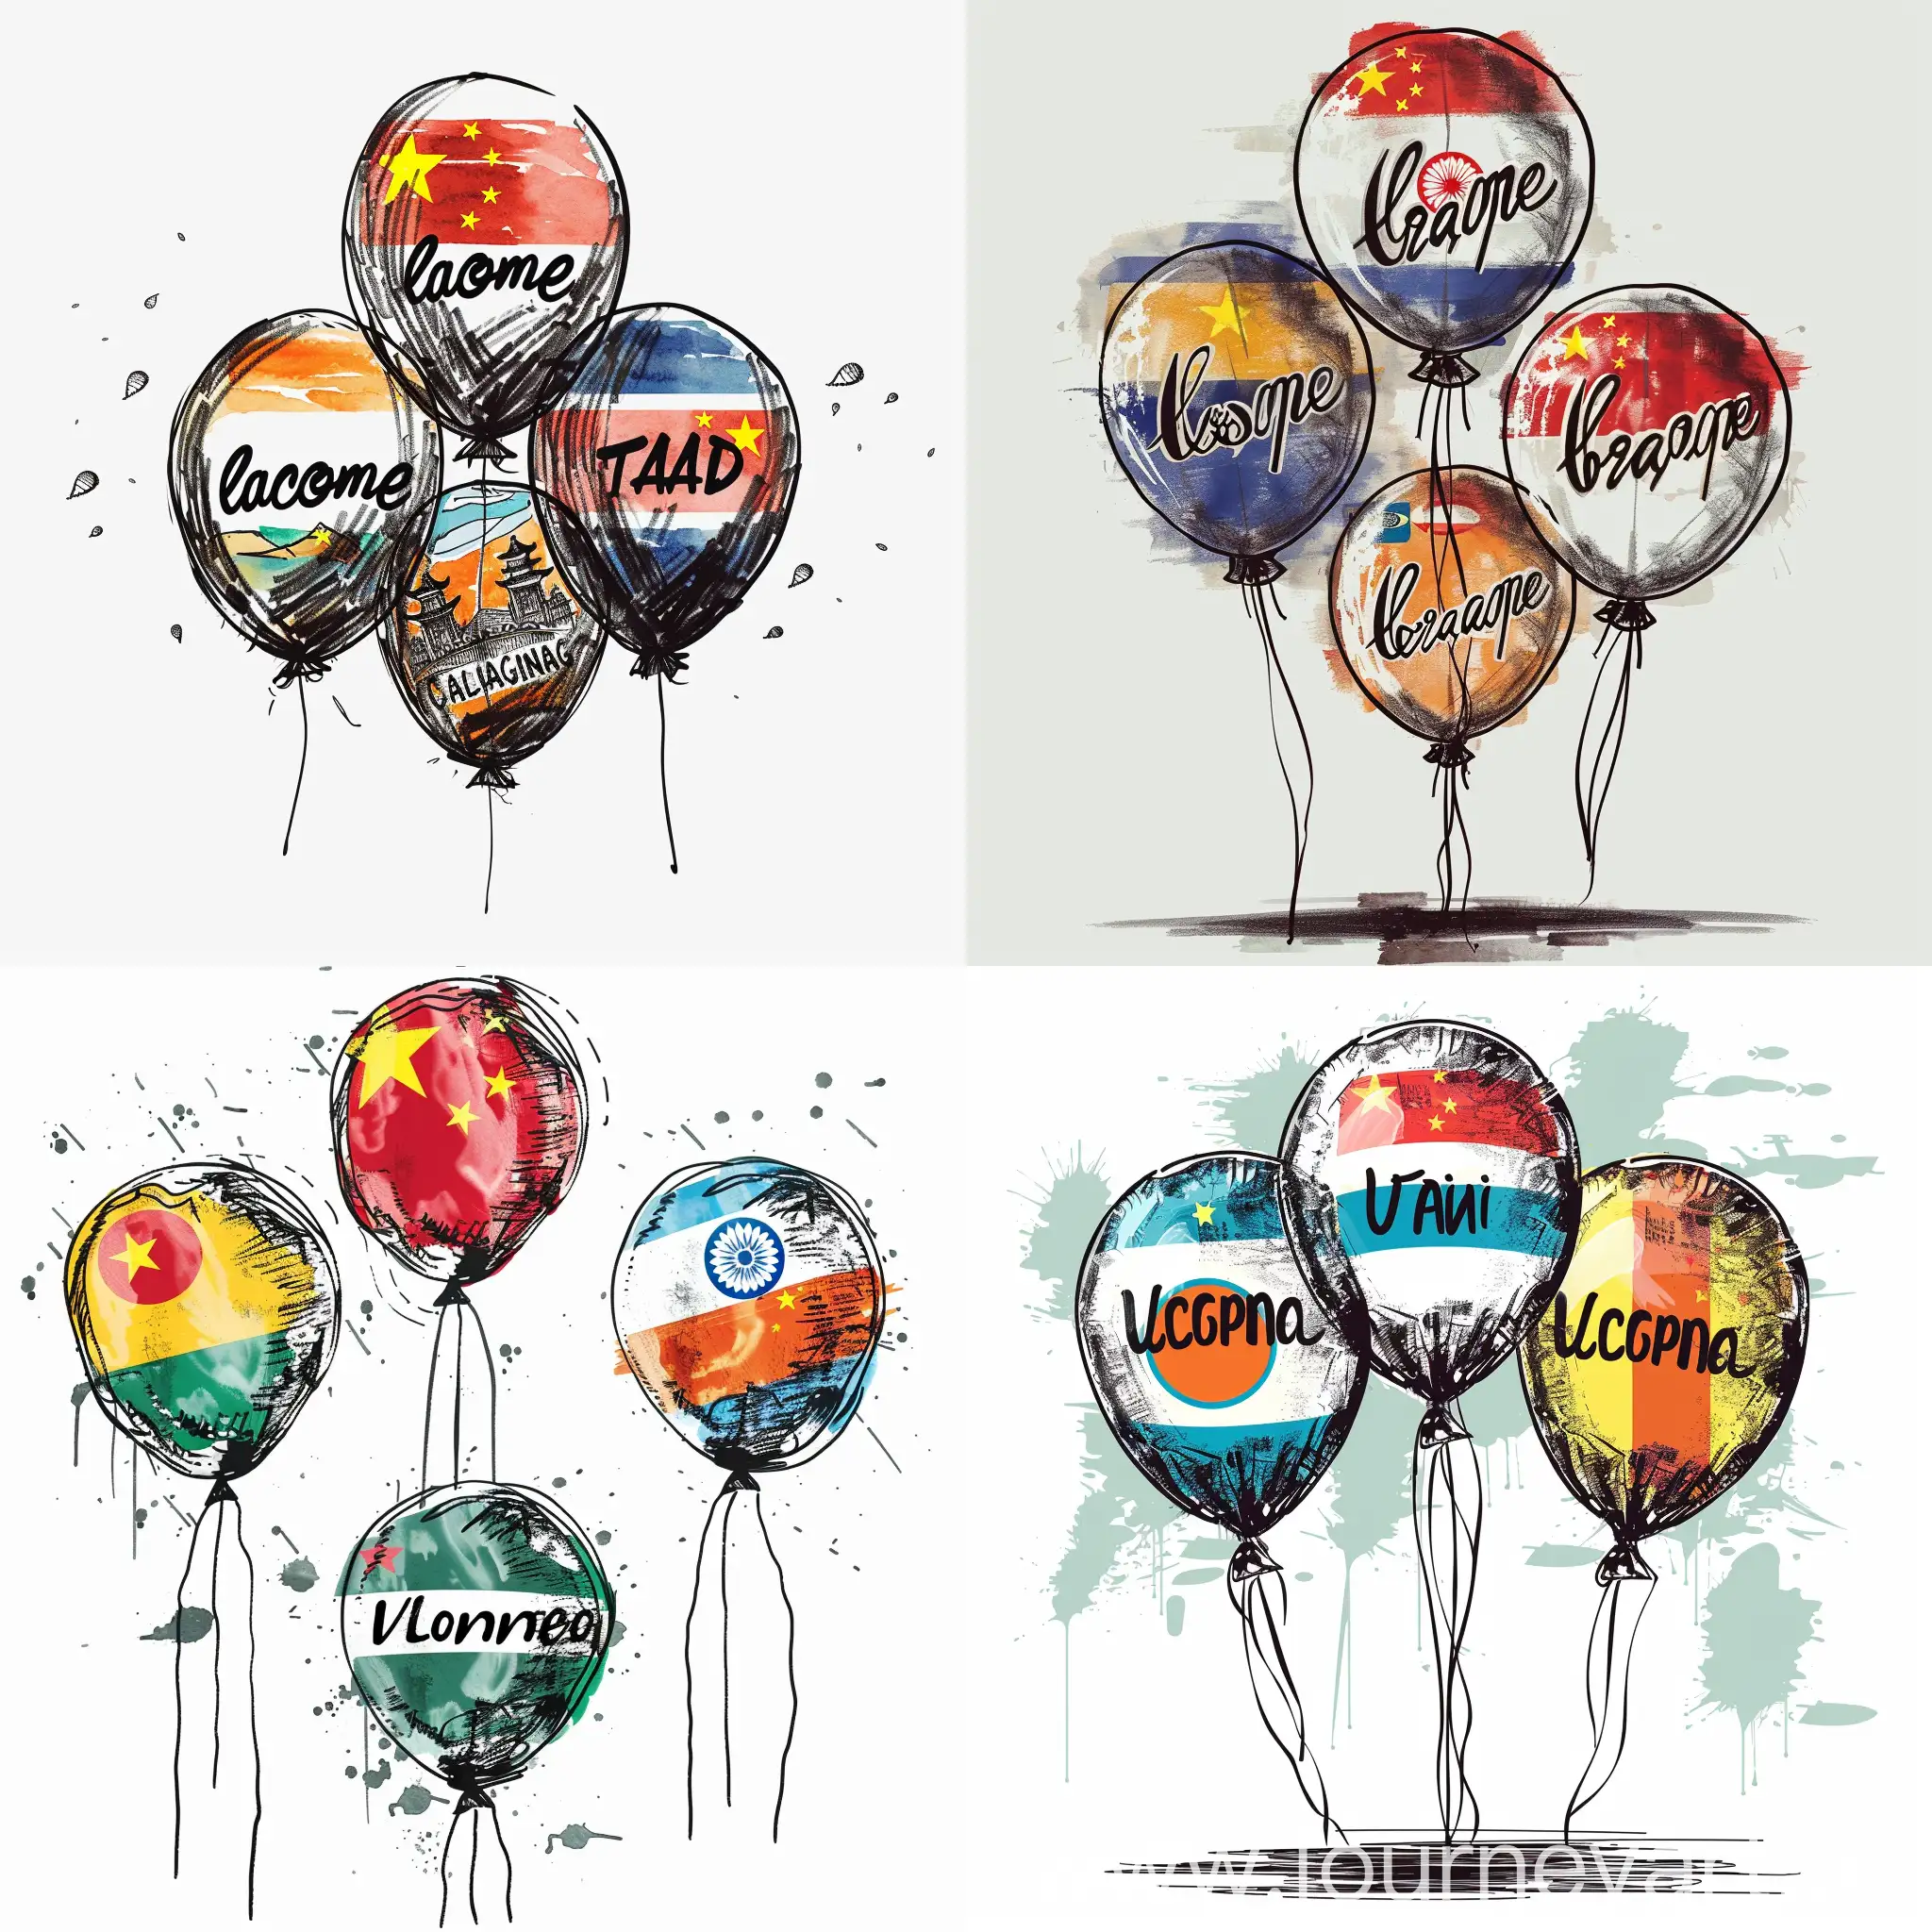 International-Balloons-Welcoming-China-Thailand-Taiwan-and-Bangladesh